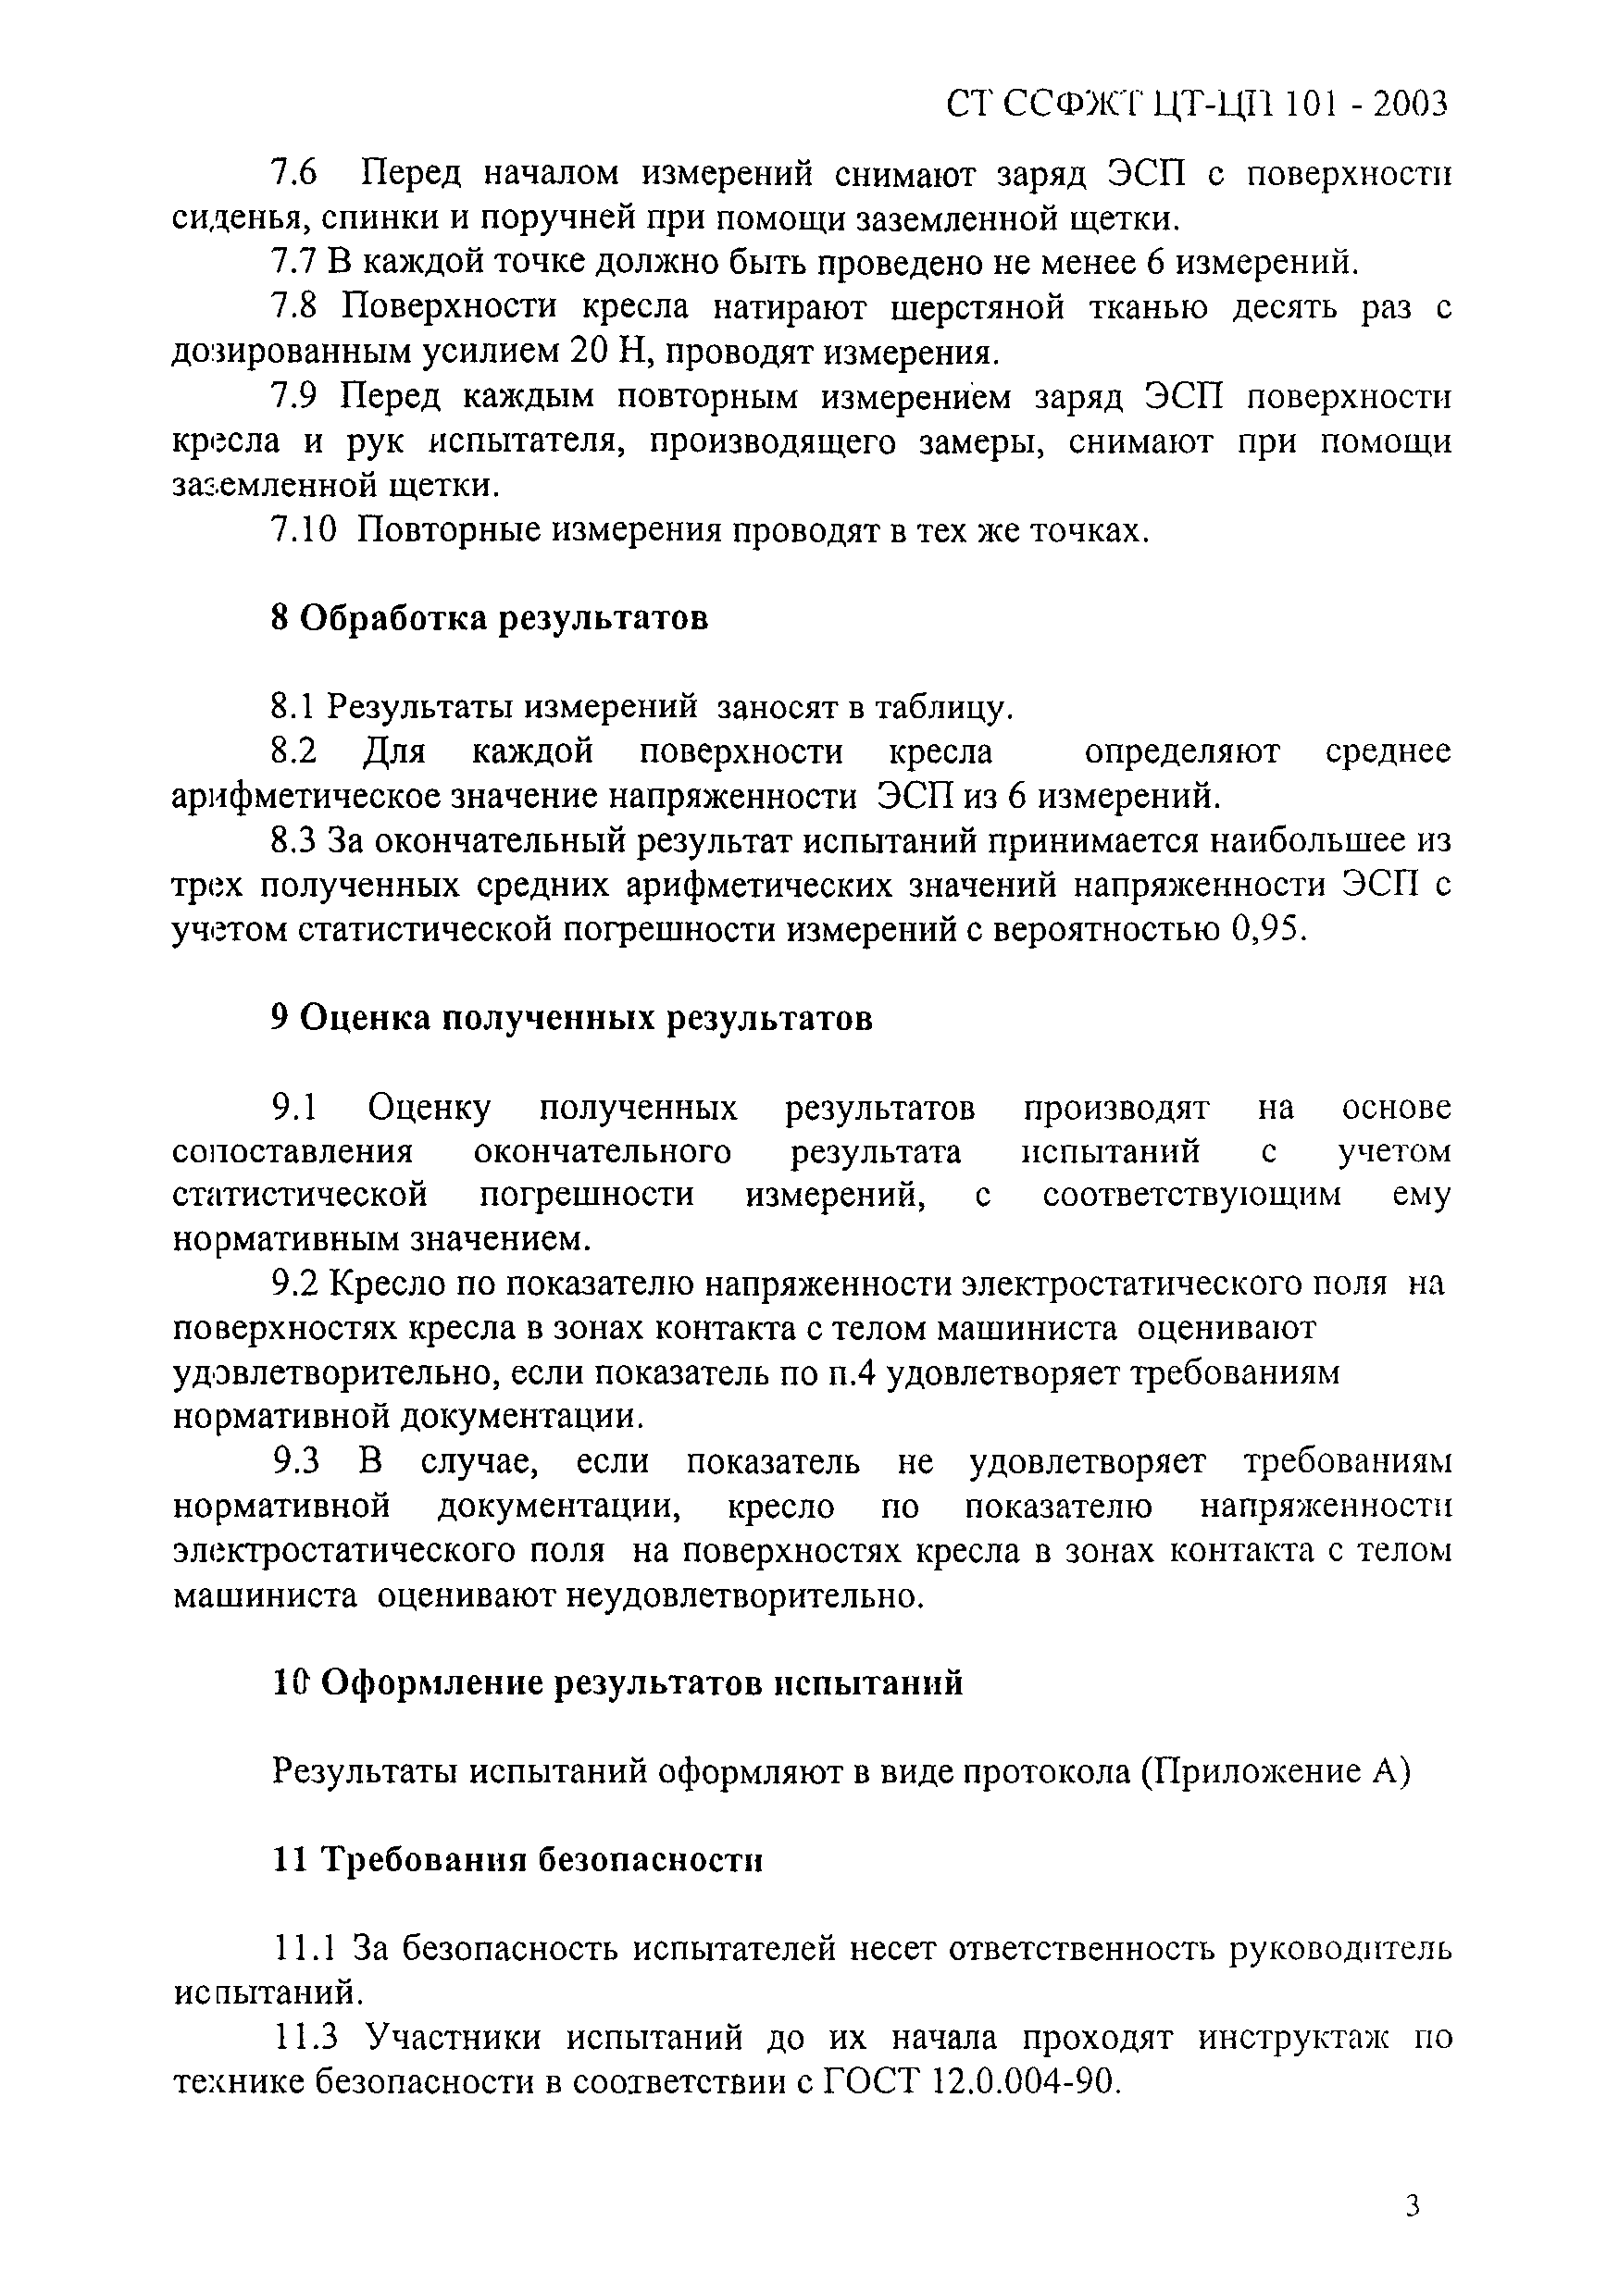 СТ ССФЖТ ЦТ-ЦП 101-2003